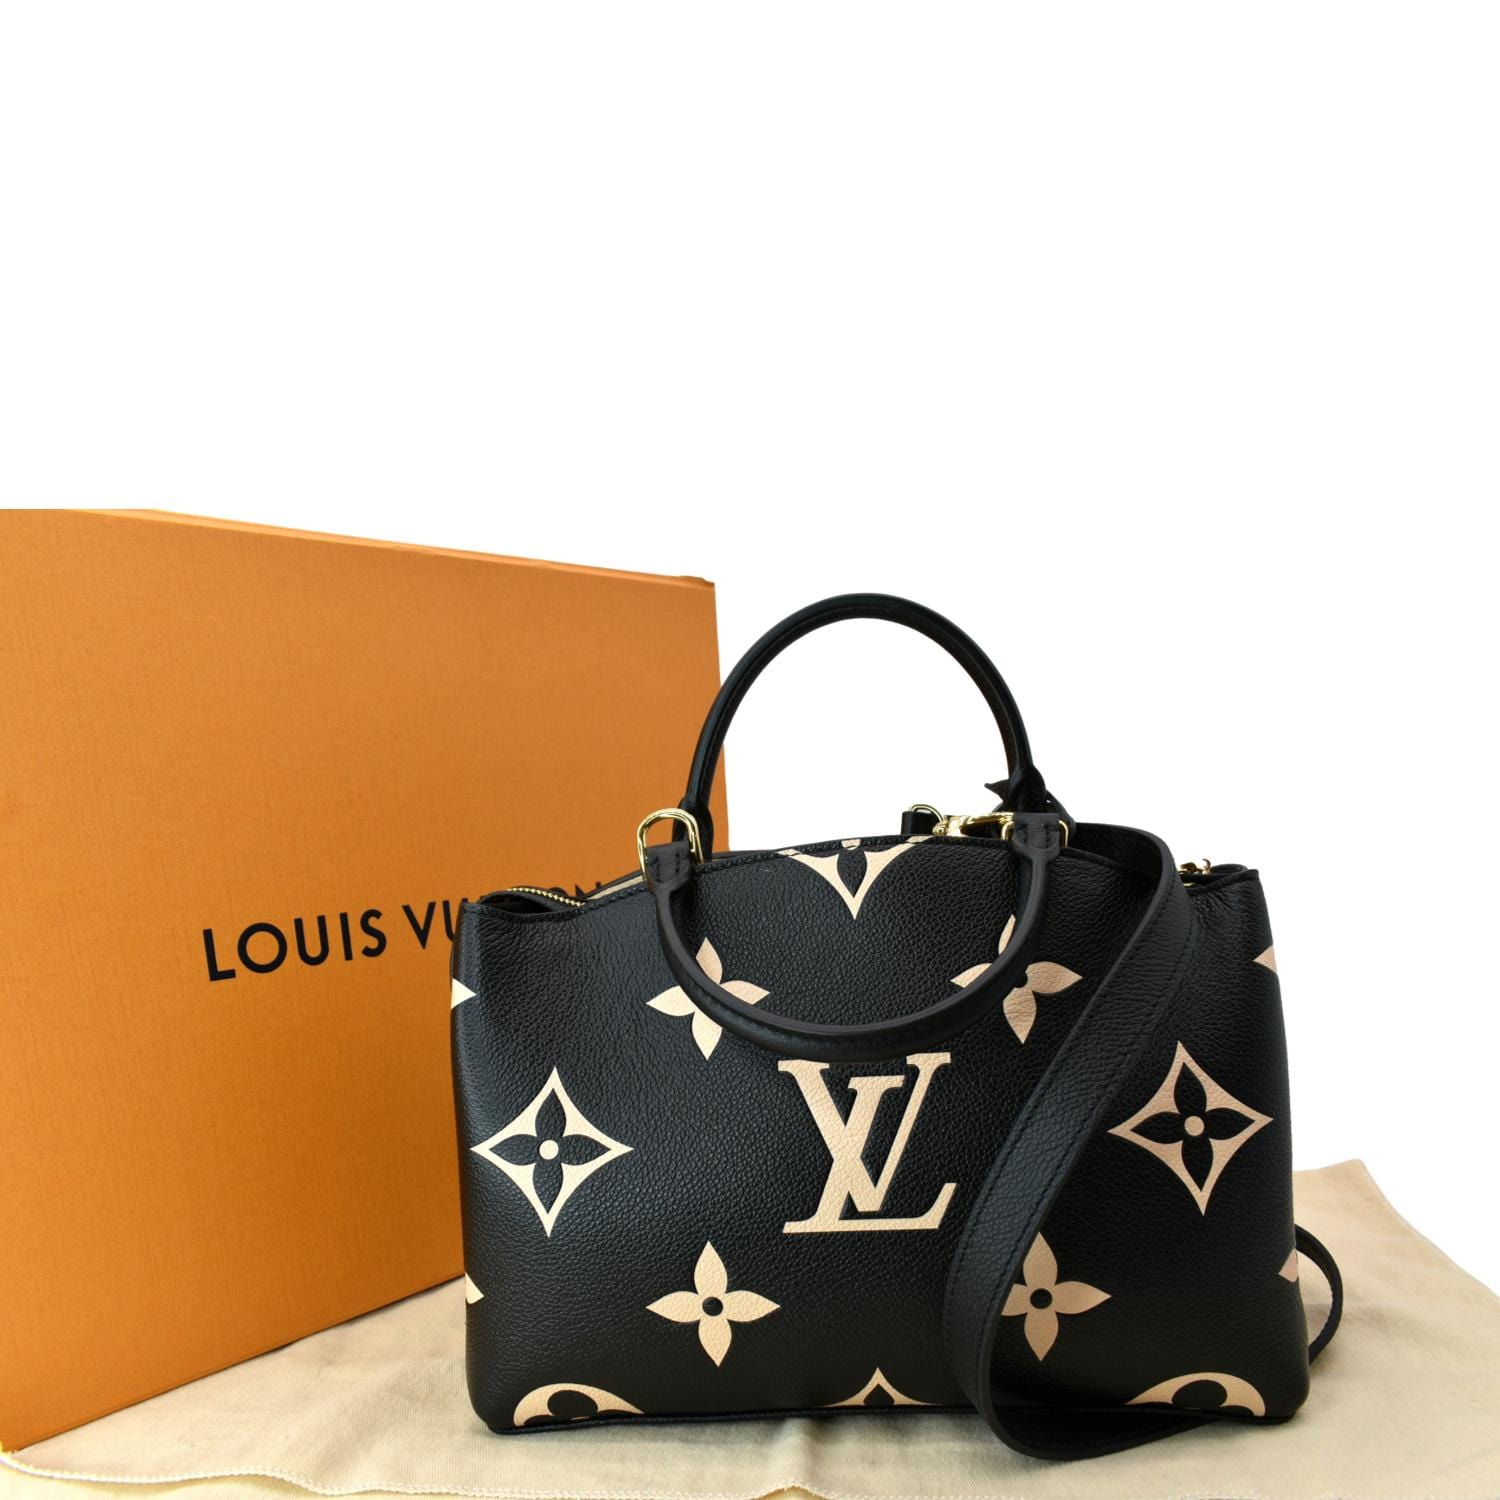 NEW Louis Vuitton Petit Palais Bicolor Monogram Empriente Leather Bag Black